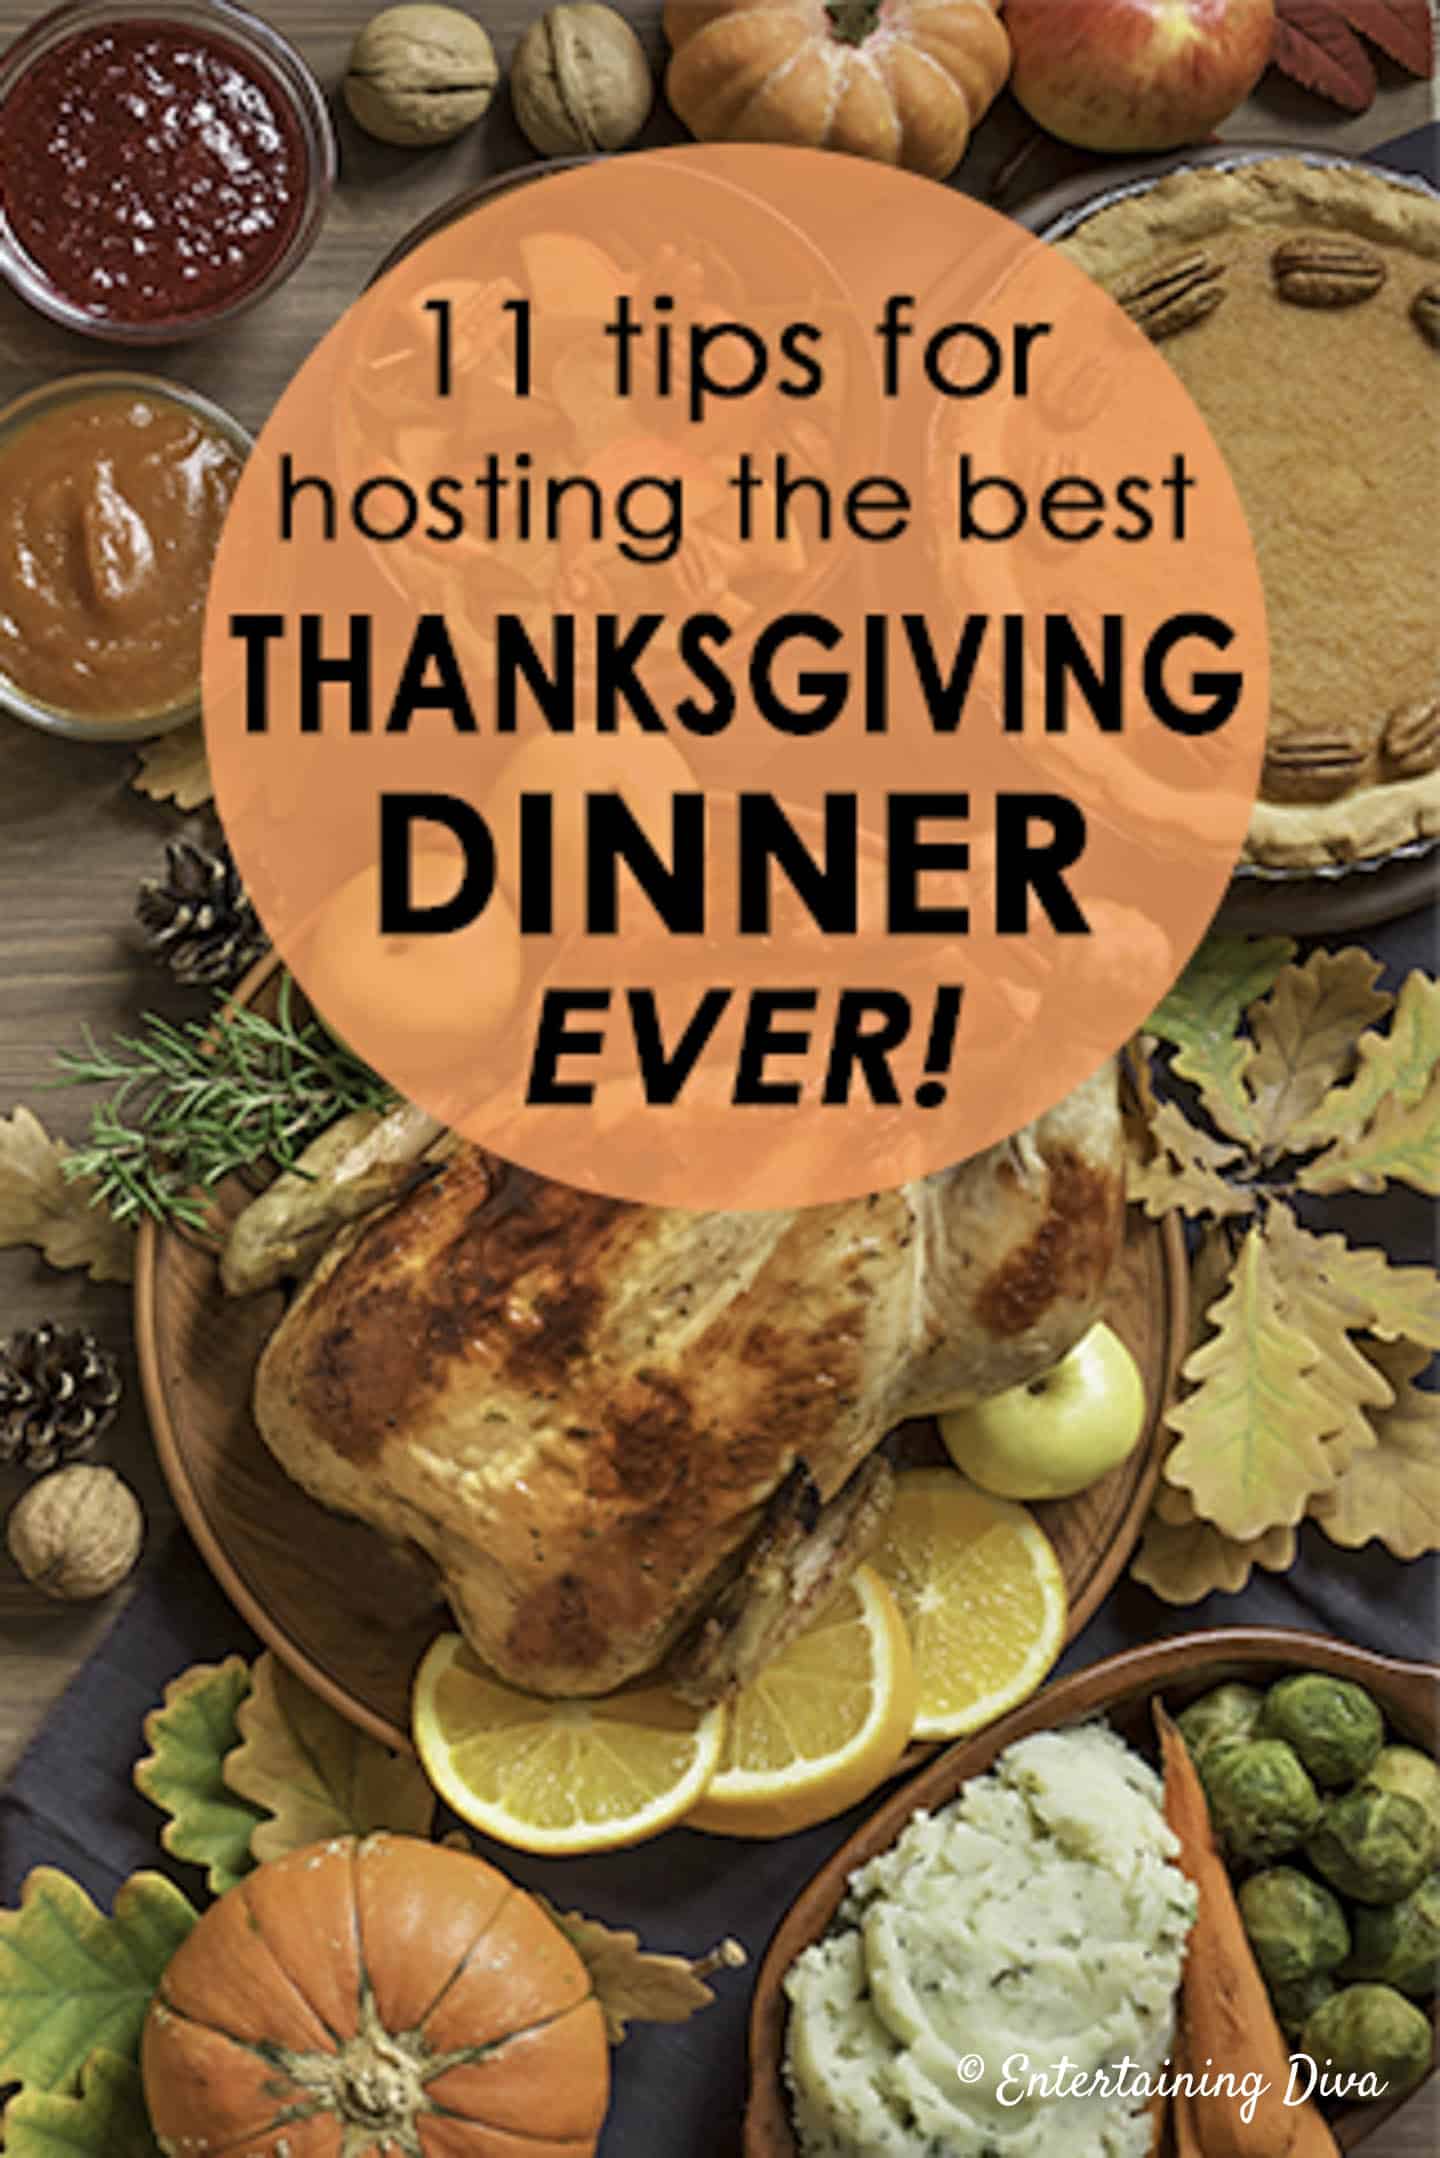 11 tips for hosting best Thanksgiving dinner ever